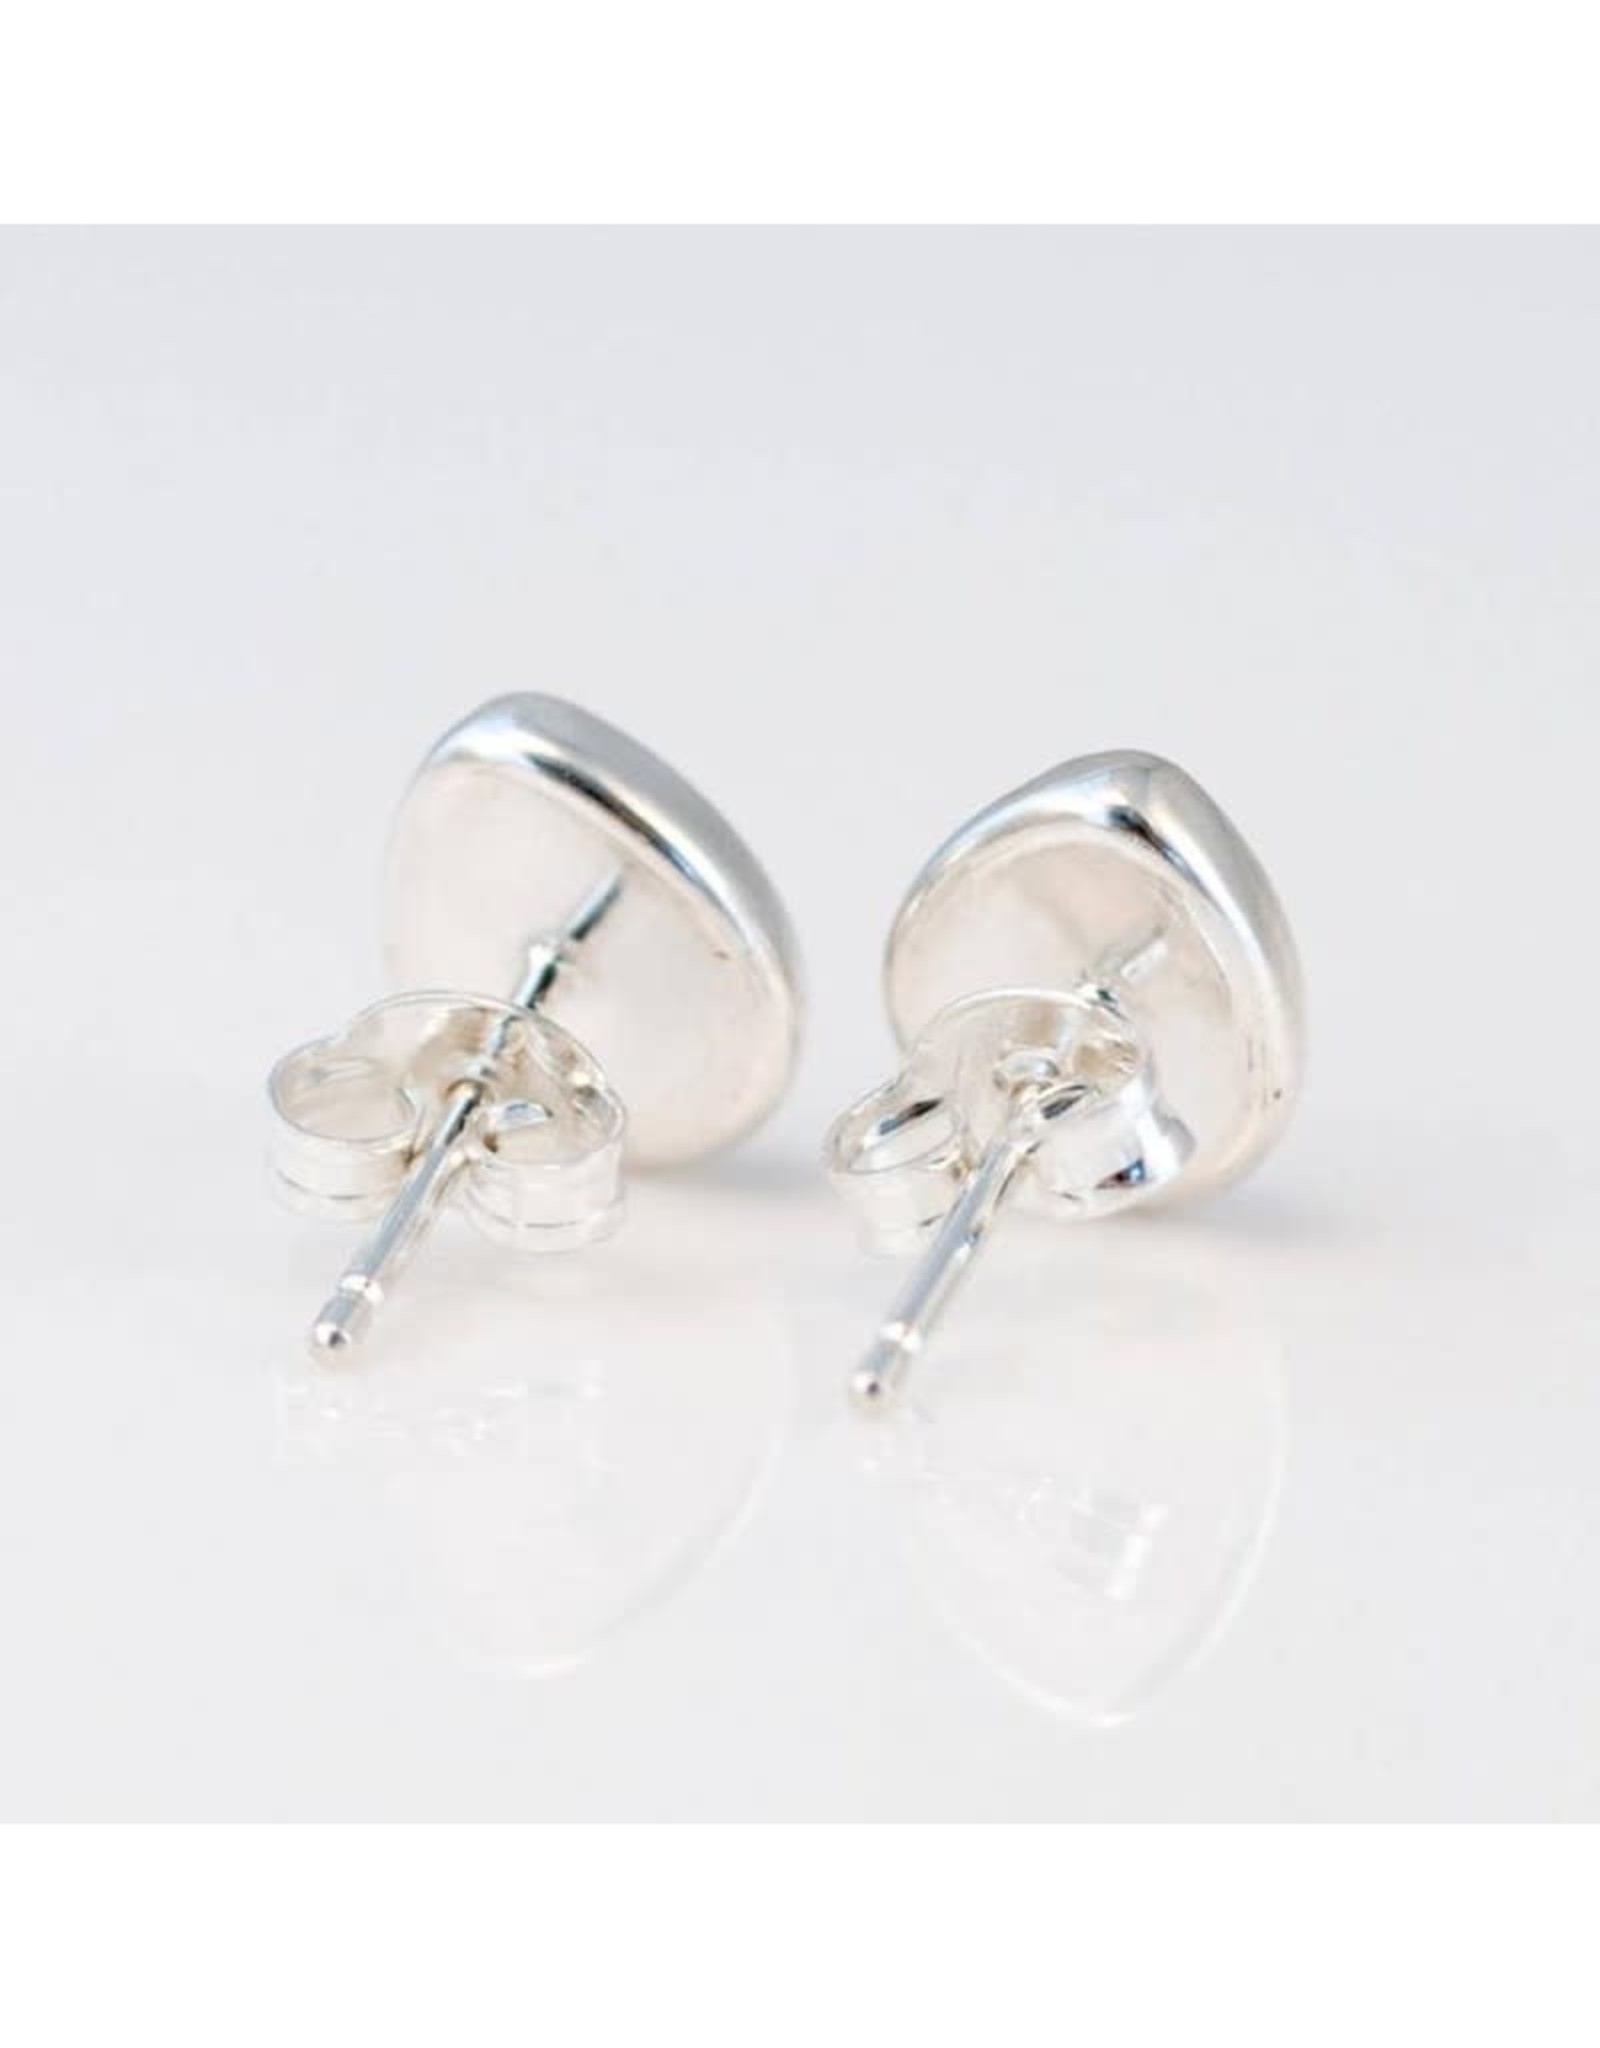 Stud Earrings - Blue Opal/Silver/Teardrop